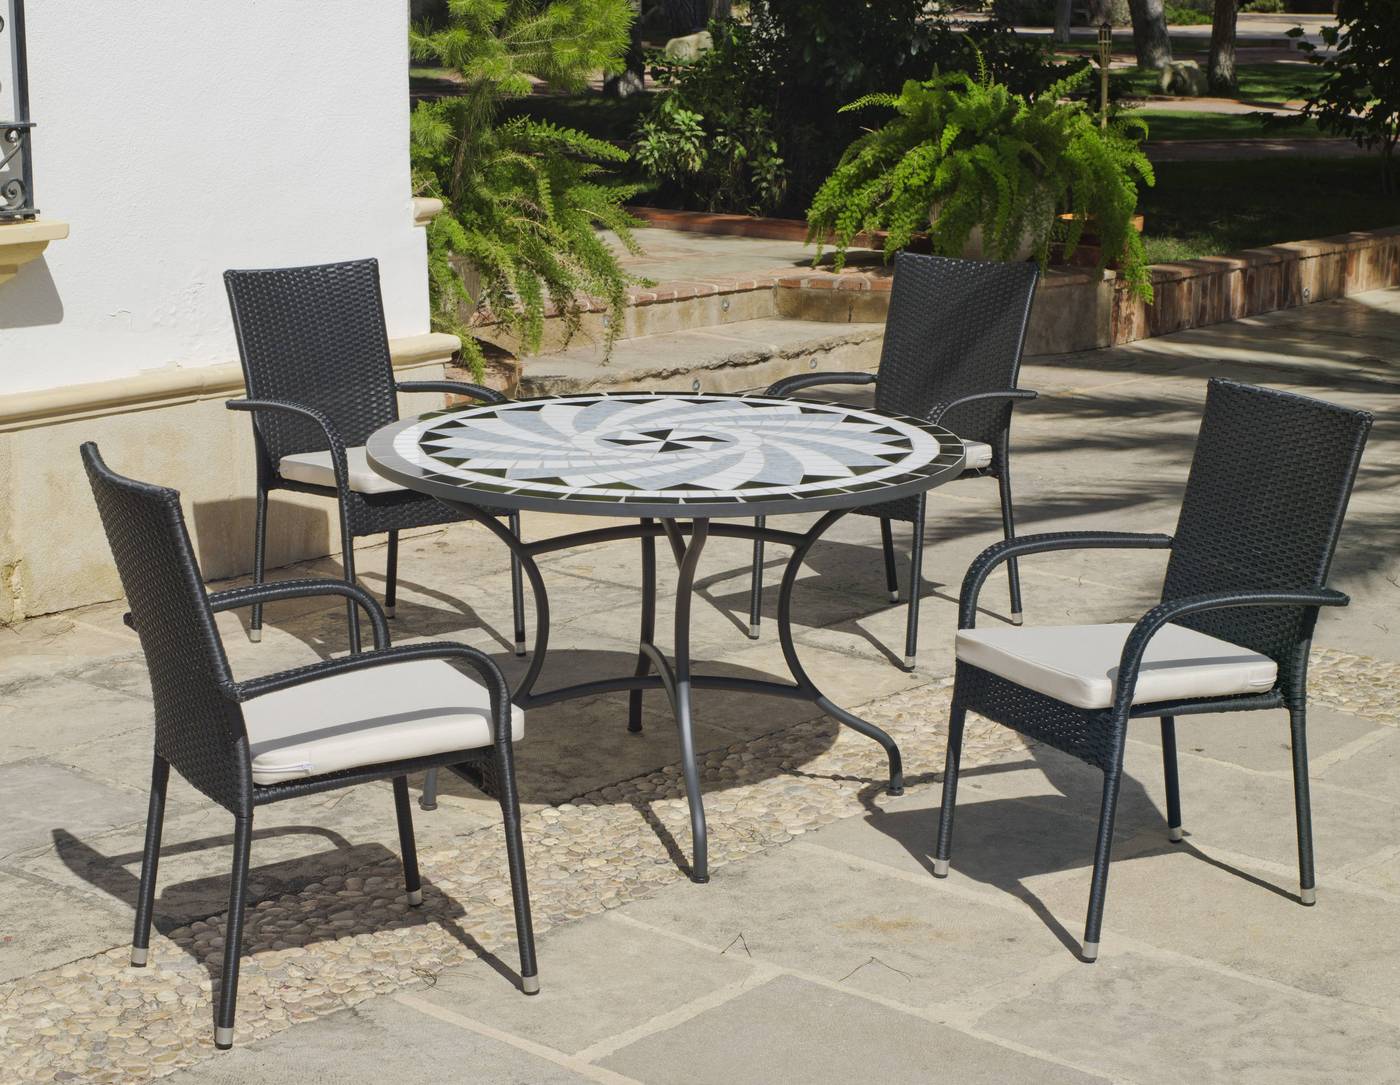 Conjunto para jardín color gris antracita: 1 mesa redonda 120 cm. de forja con panel mosaico + 4 sillones de ratán sintético